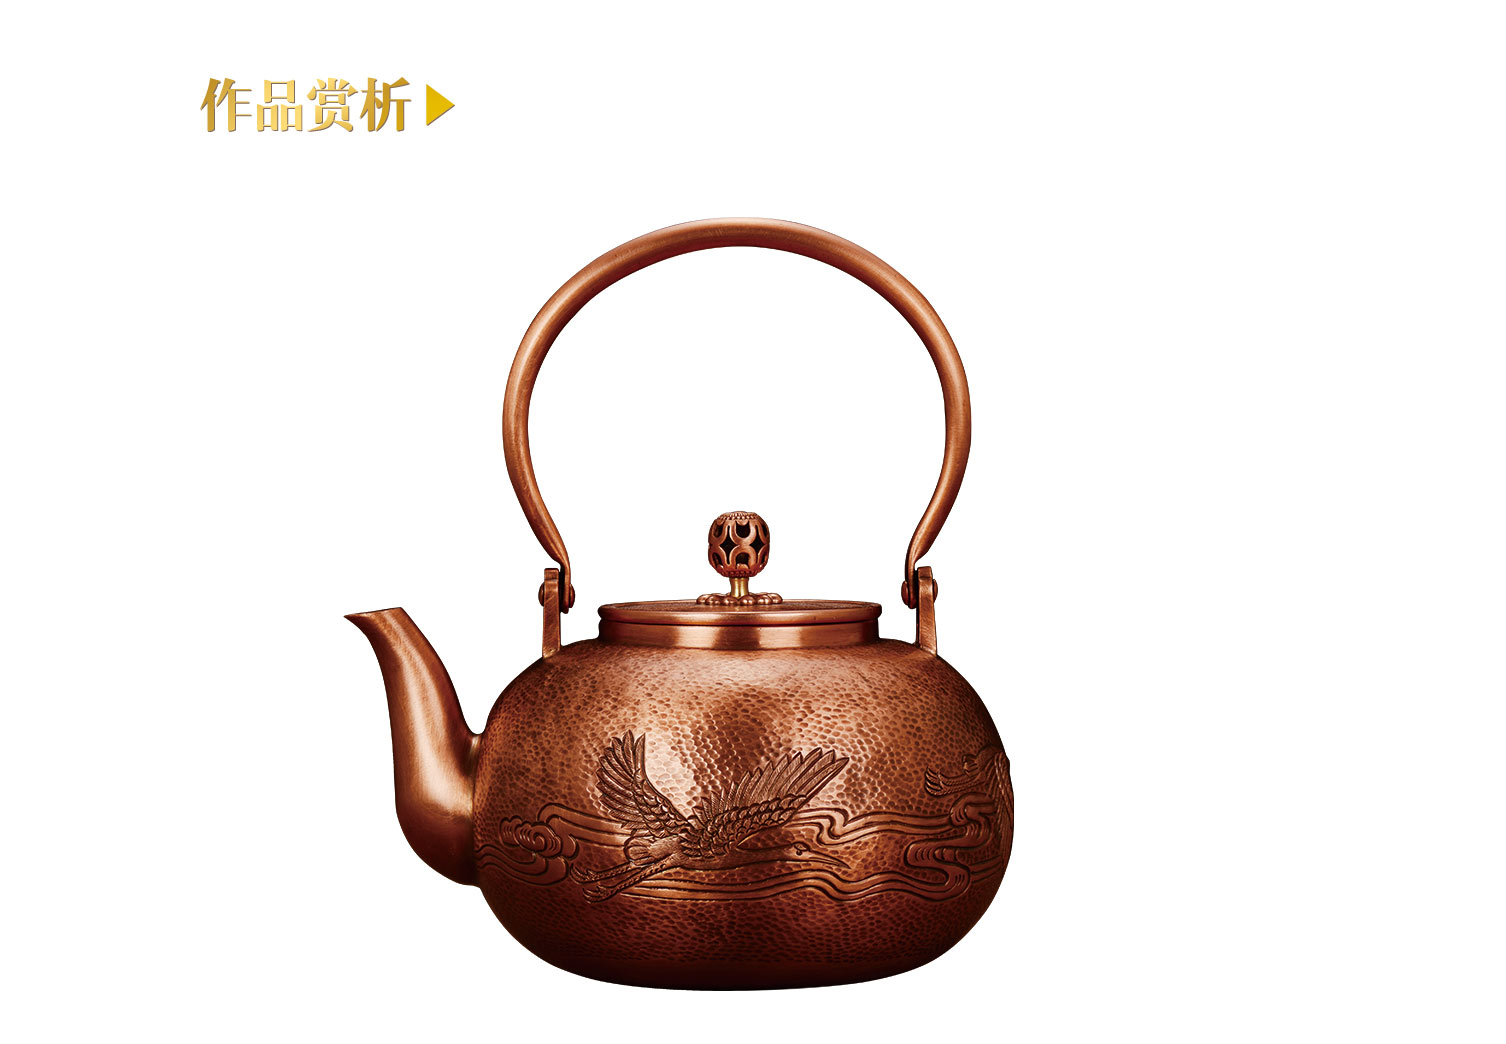 7 鸟篆文铜壶-传统艺术-图片